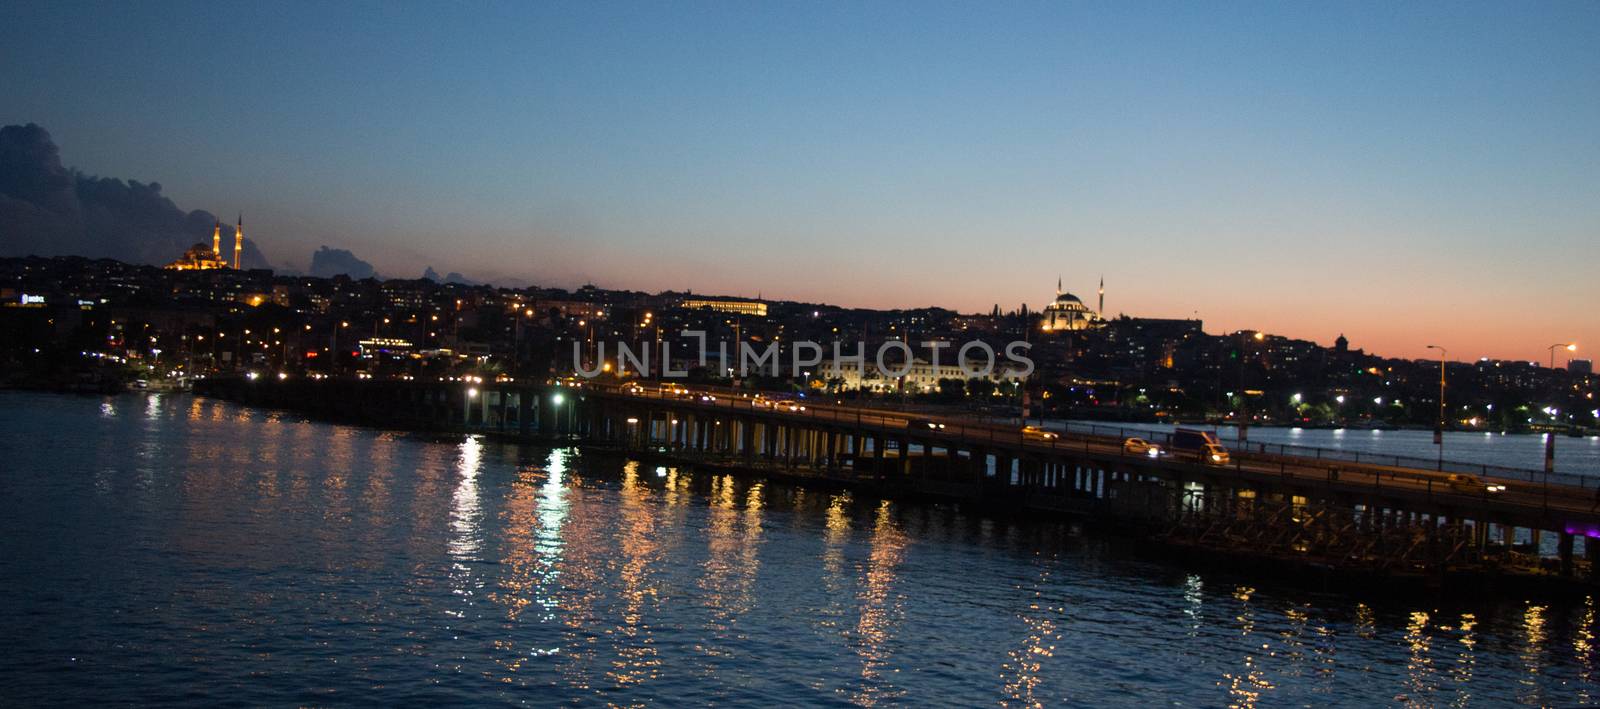 Ataturk bridge on Golden Horn at night on display